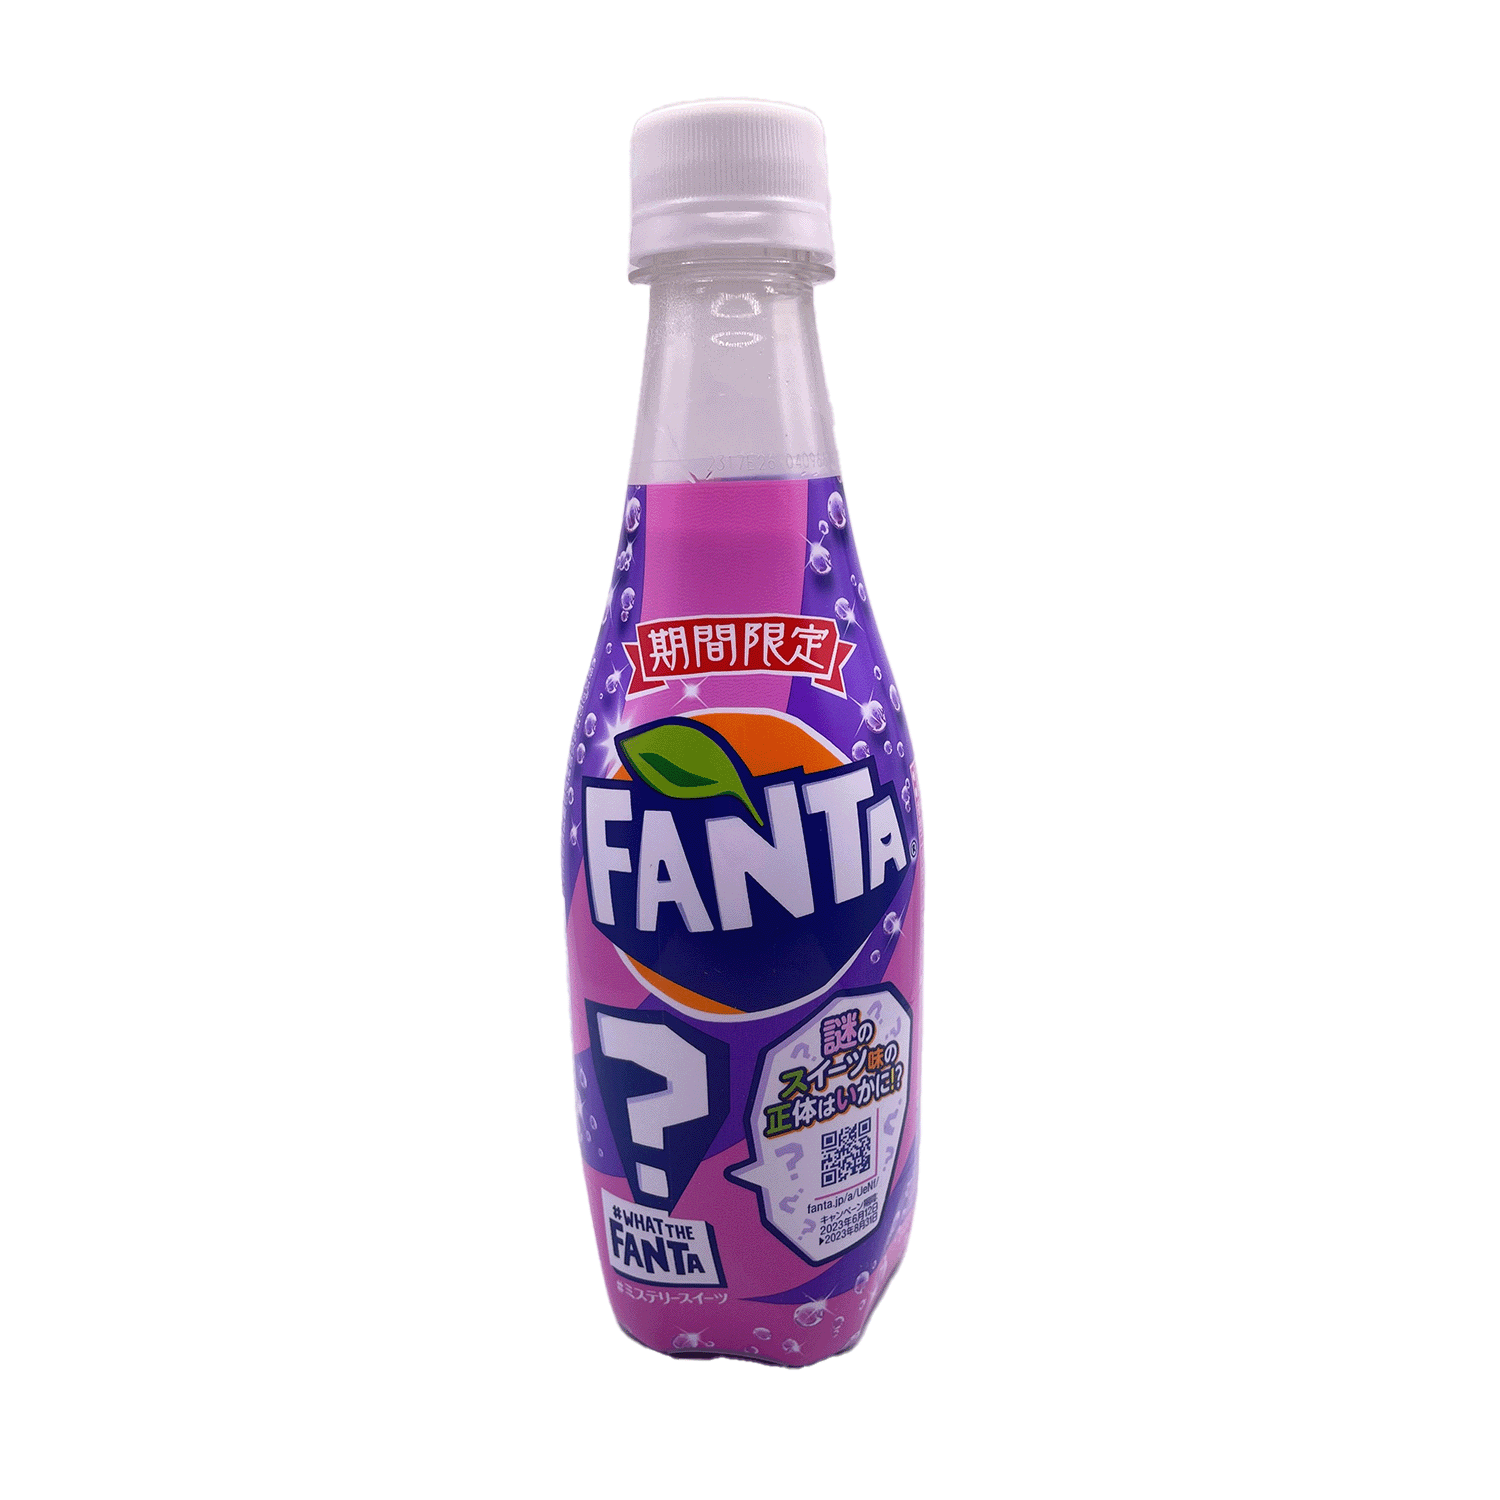 fanta logo purple